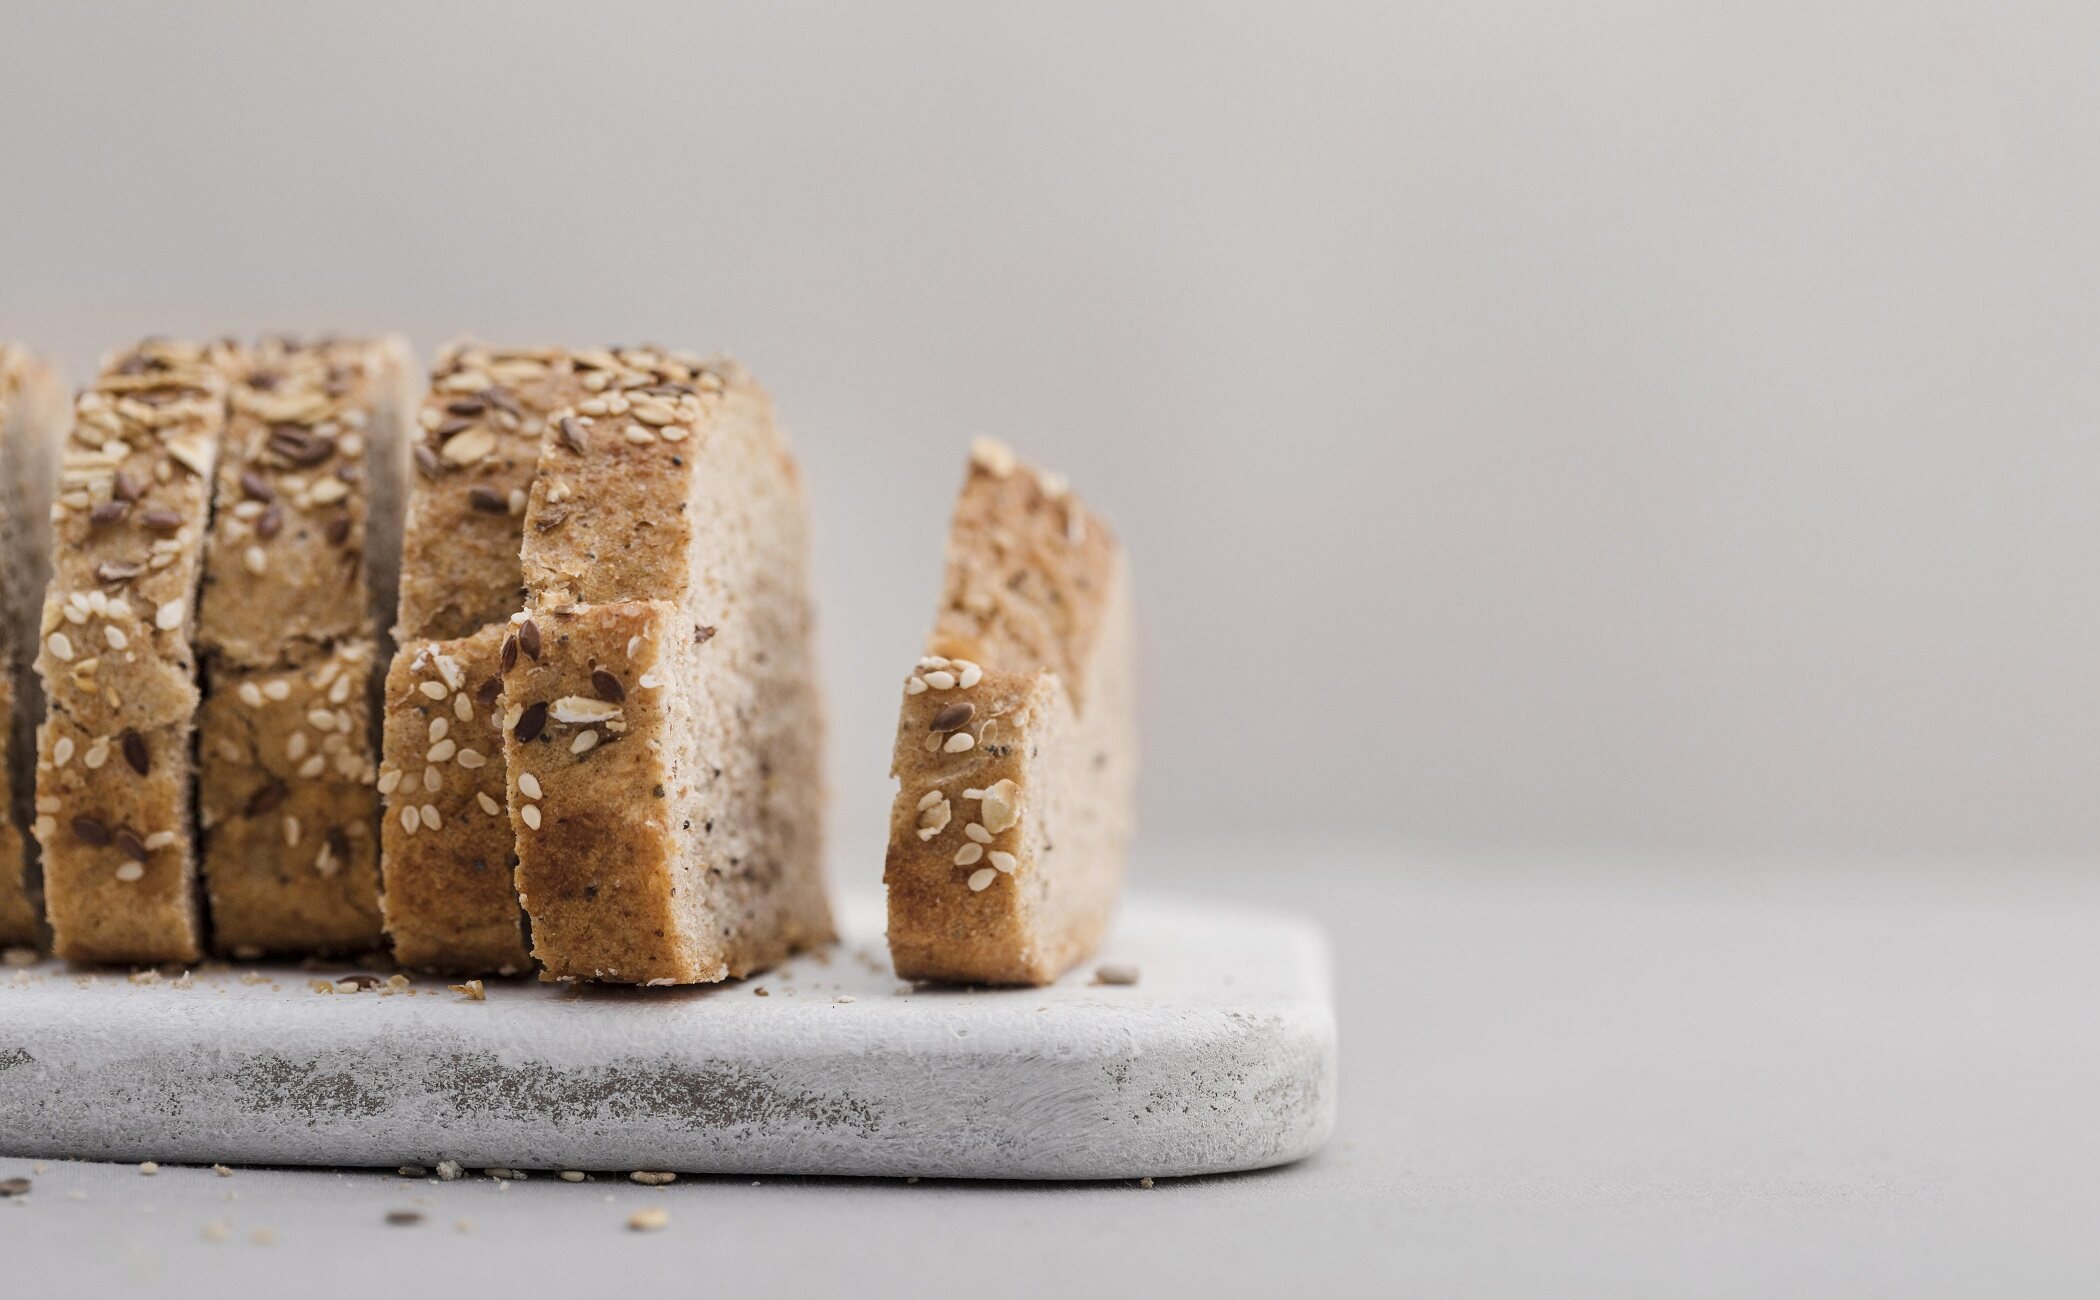 ¿Es el pan proteico más sano que el pan tradicional?